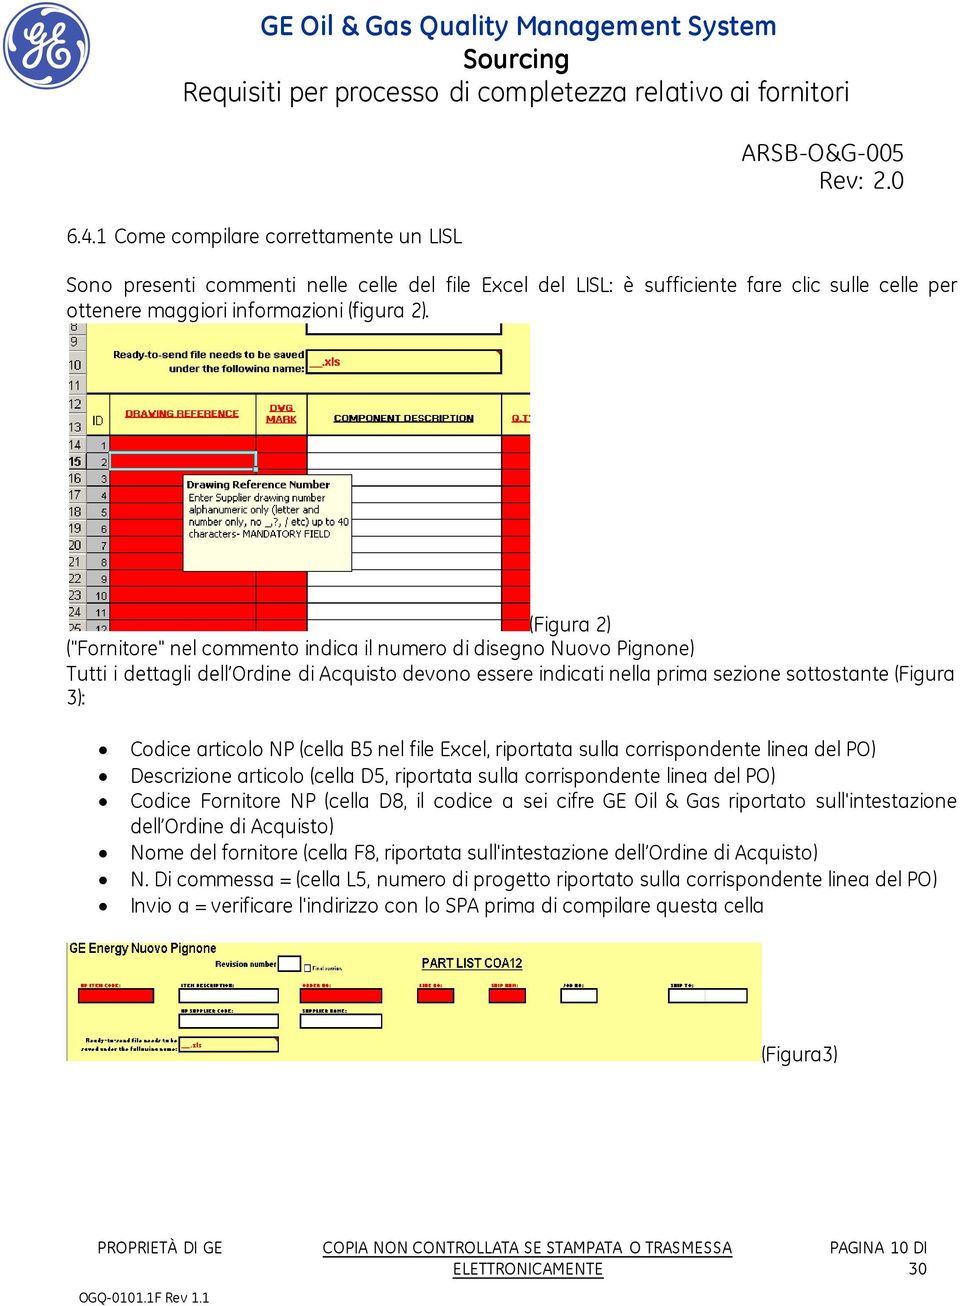 articolo NP (cella B5 nel file Excel, riportata sulla corrispondente linea del PO) Descrizione articolo (cella D5, riportata sulla corrispondente linea del PO) Codice Fornitore NP (cella D8, il